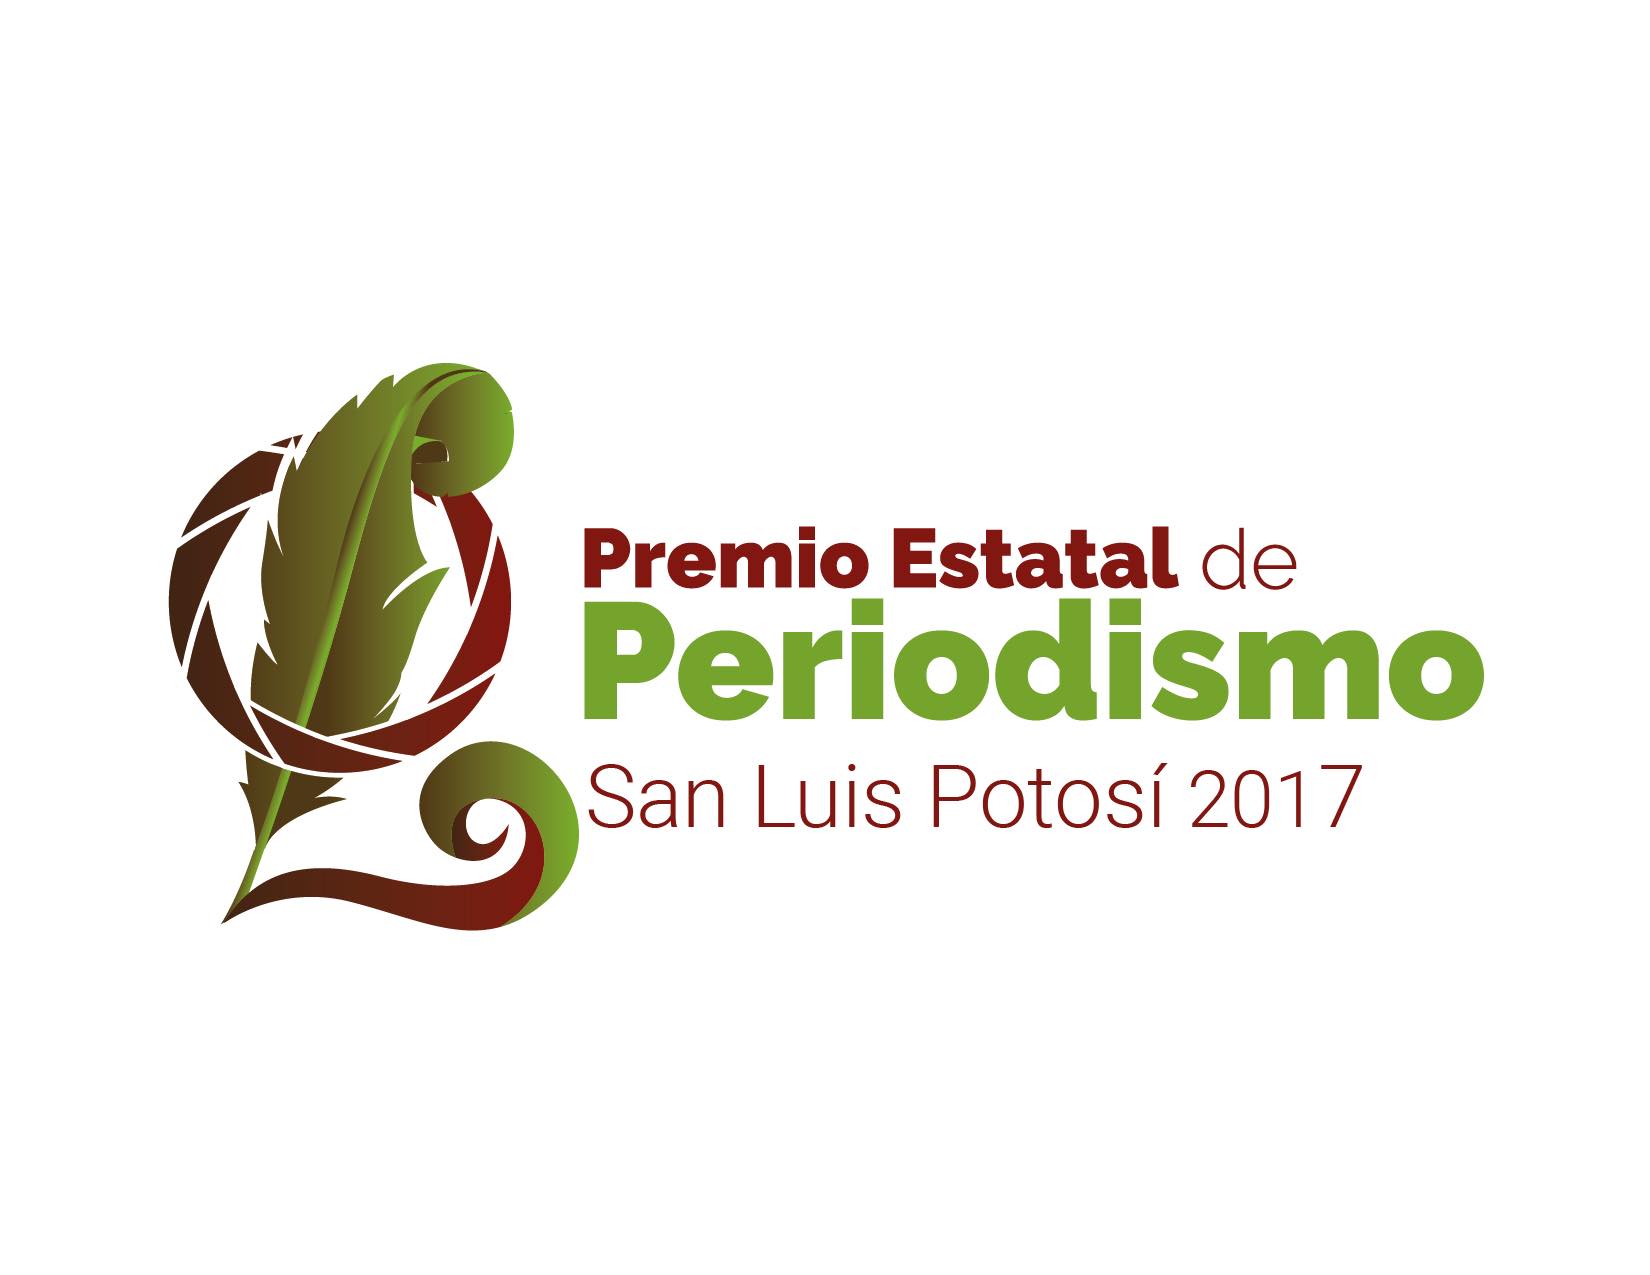  Continúa la recepción de trabajos para el Premio Estatal de Periodismo 2017